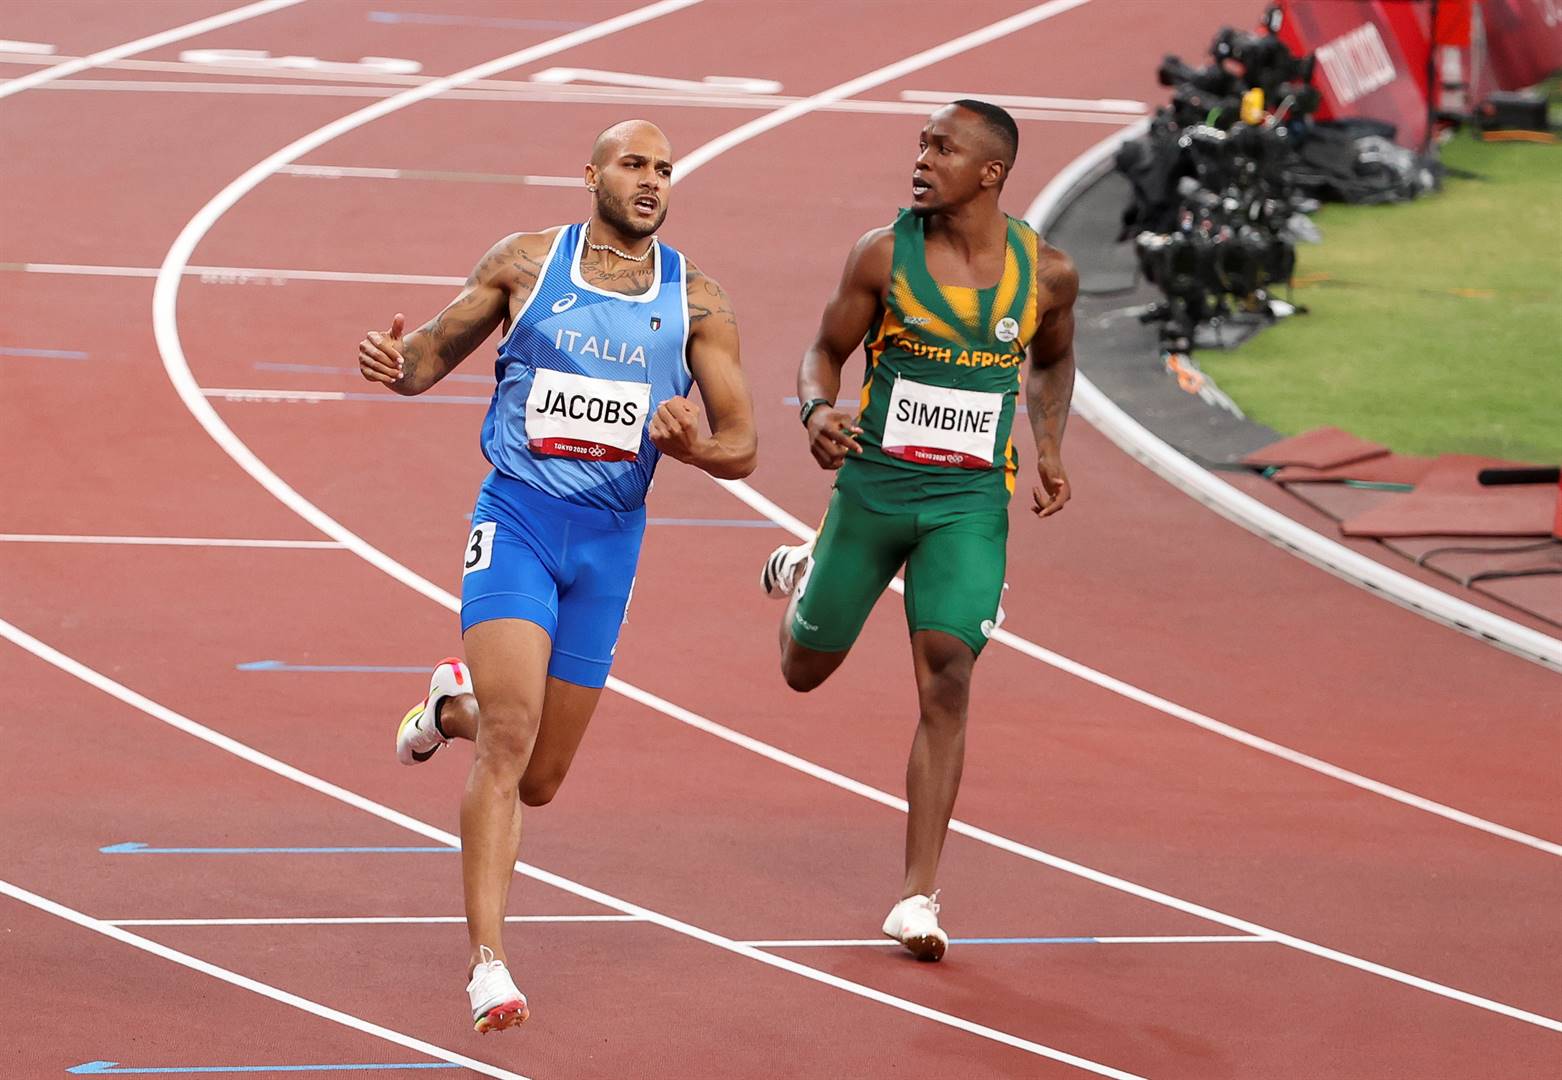 Die Italianer Lamont Marcell Jacobs (links) het verlede jaar die Olimpiese 100 m-titel gewen, terwyl Akani SImbine (regs) net ’n vierde plek kon behaal. Foto: Getty Images